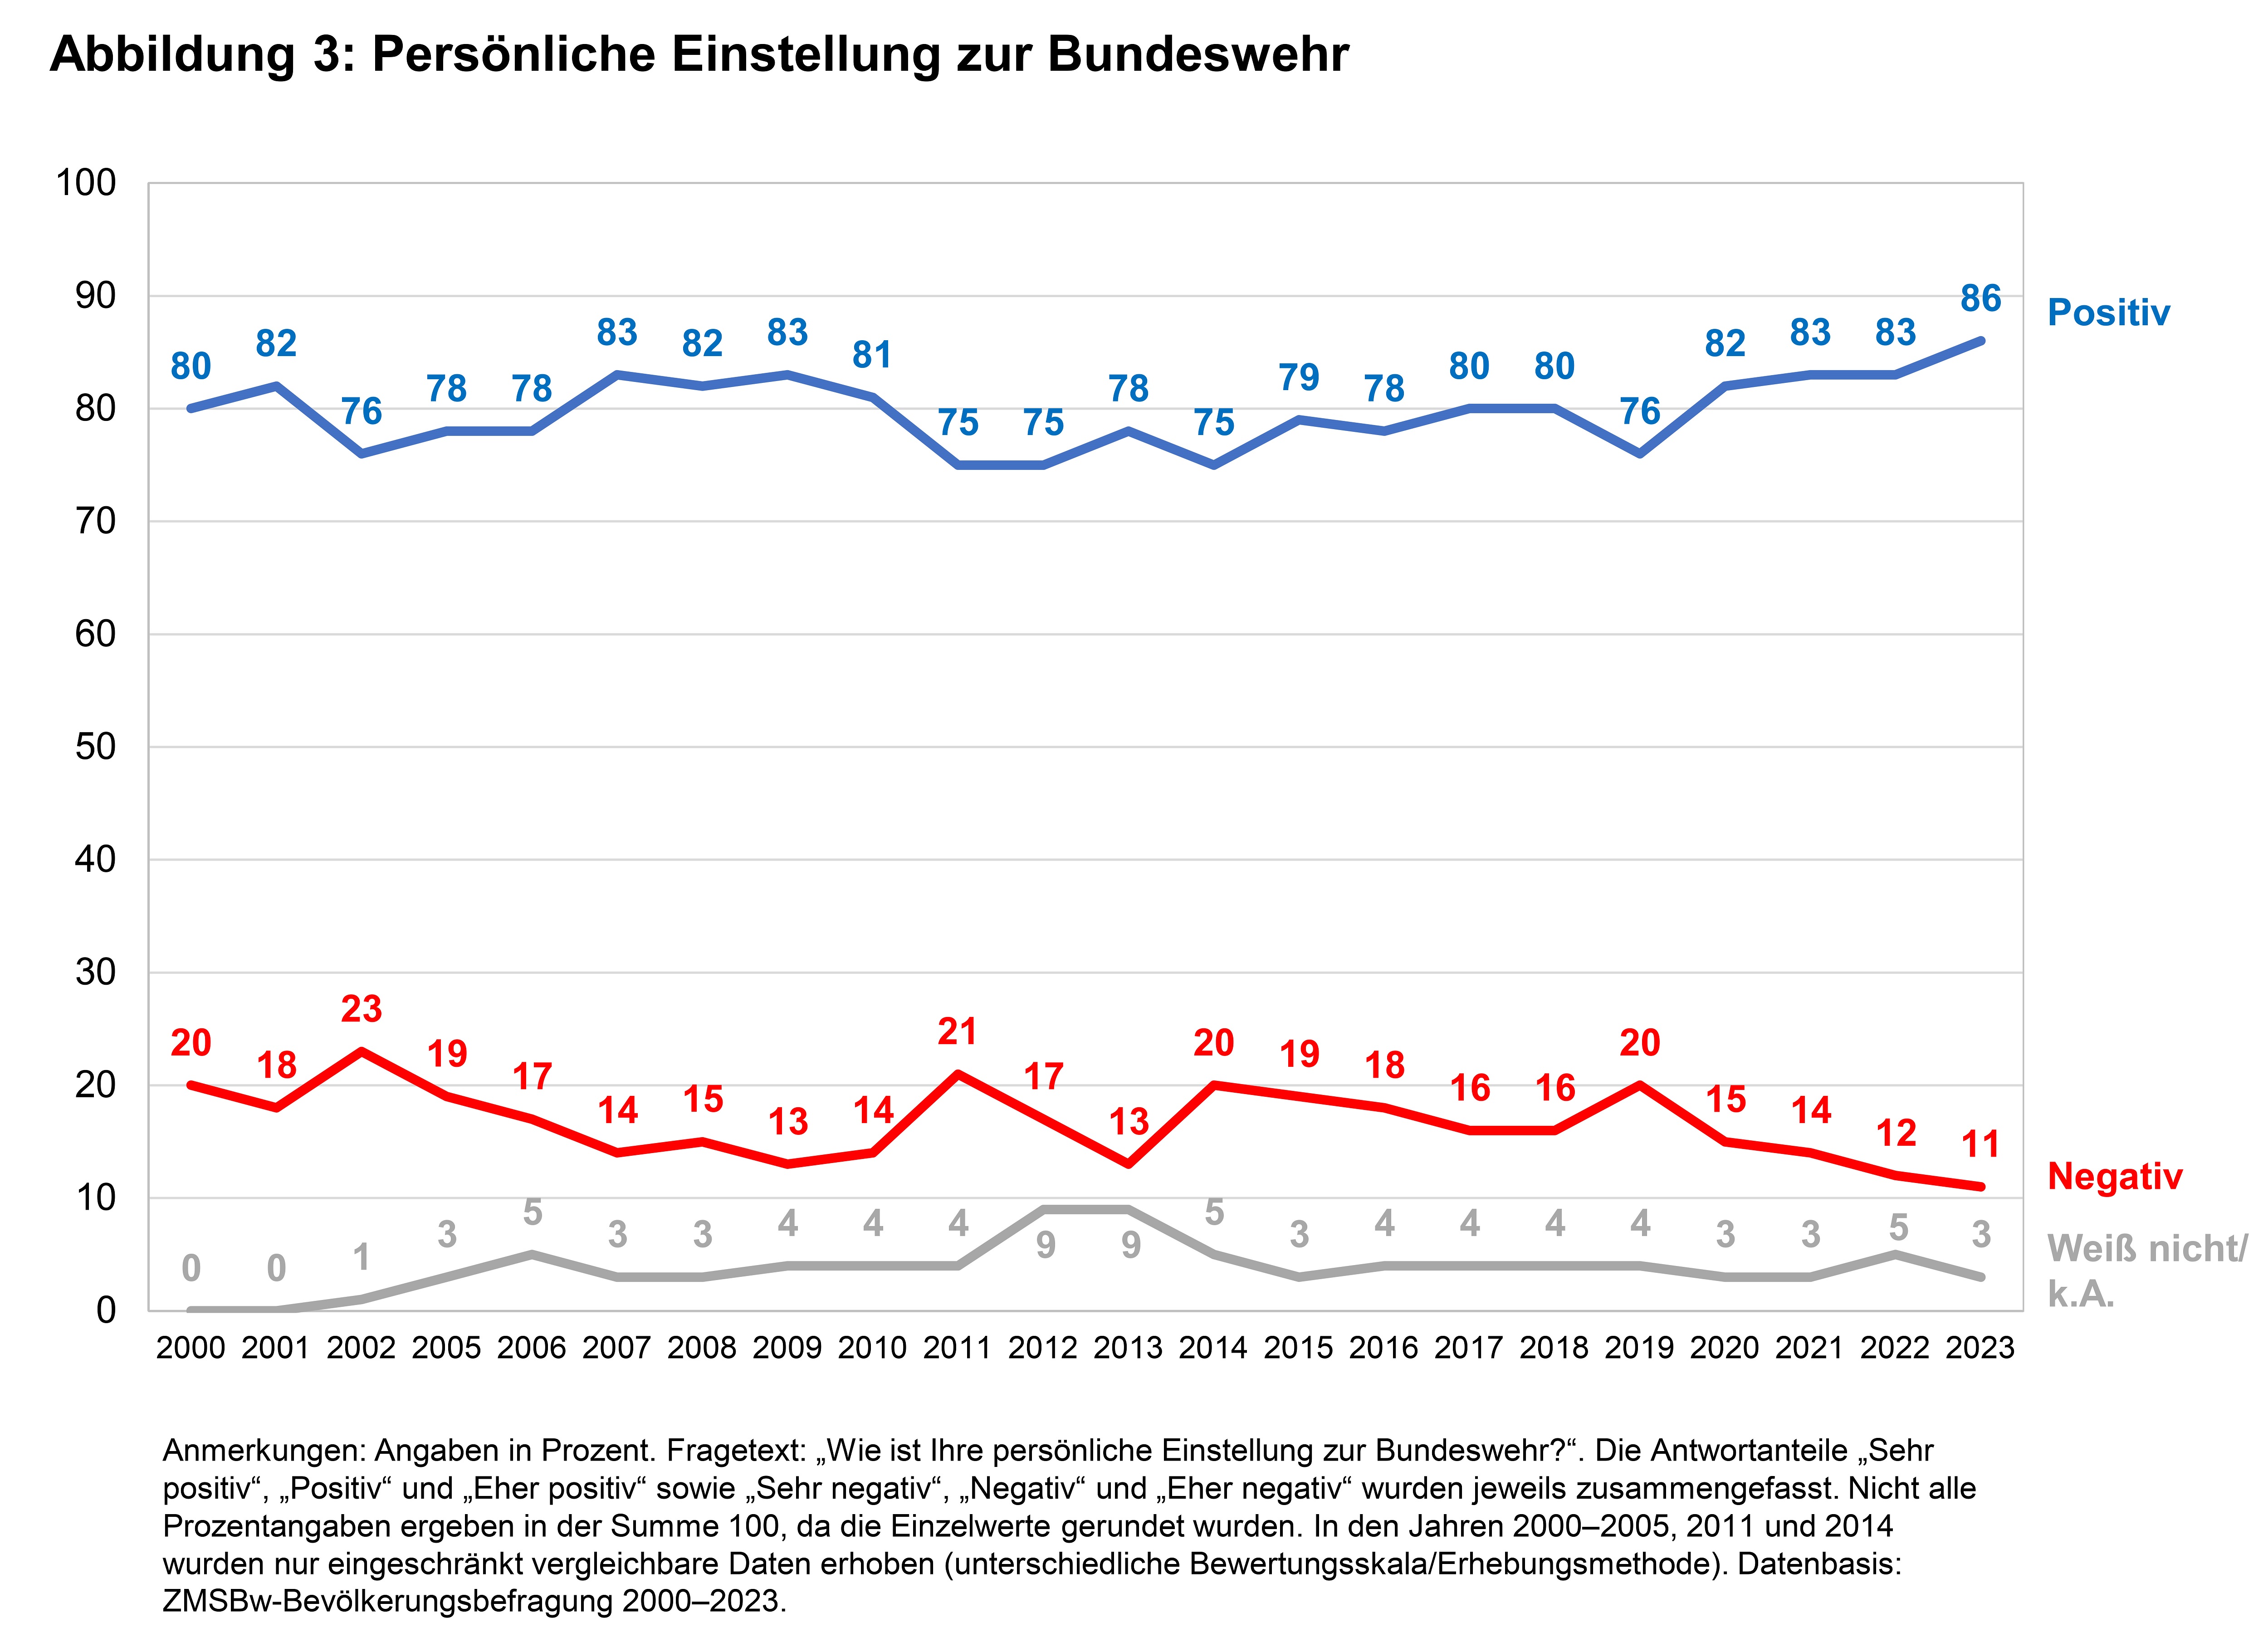 Die Grafik zeigt, dass 2023 persönliche Einstellung zur Bundeswehr mit 86 Prozent auf einem historischen Höchstwert war.